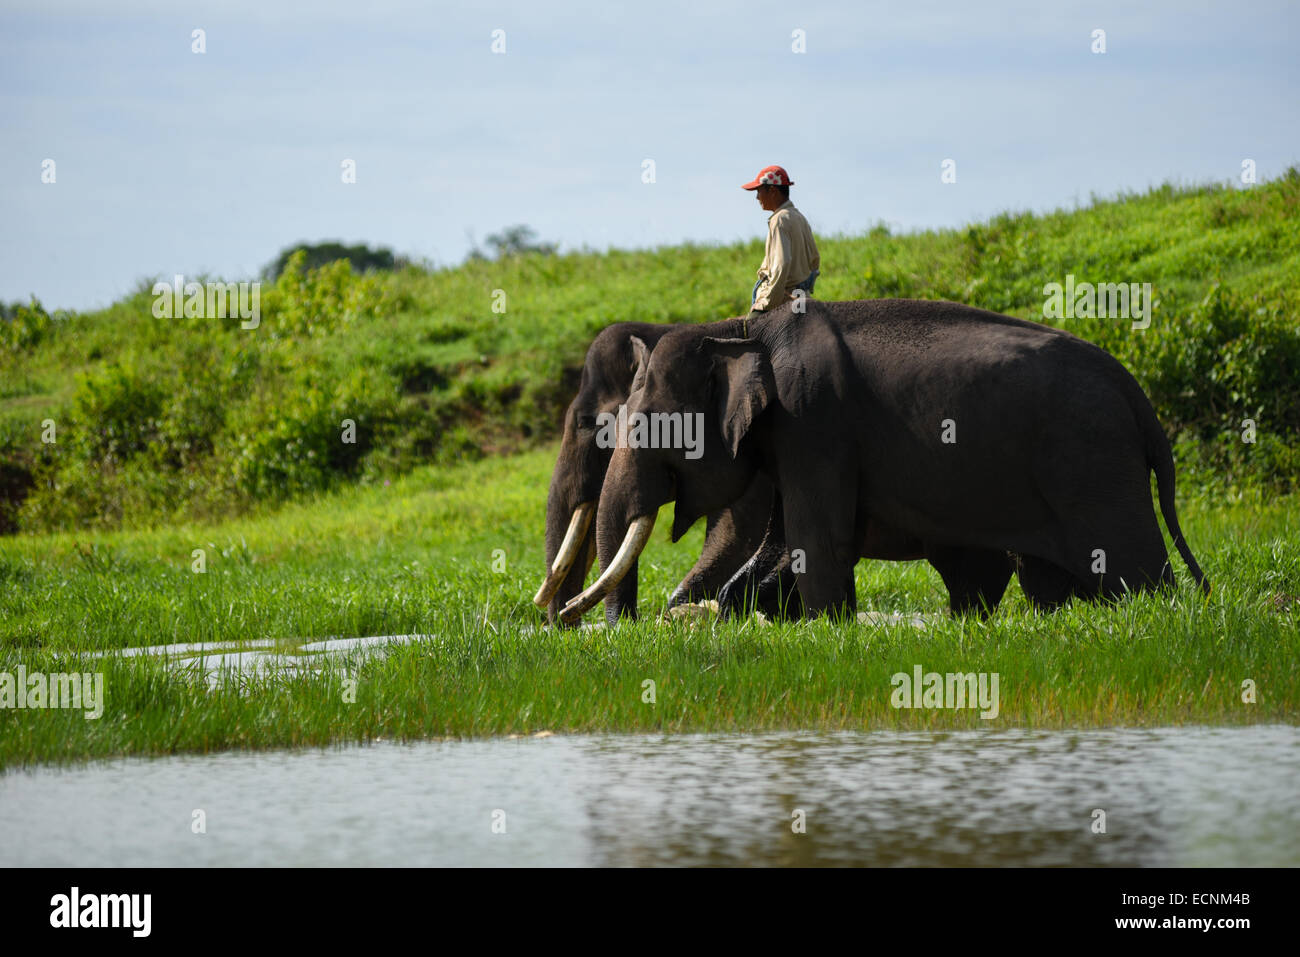 Un mahout (elefante keeper) tome los elefantes en su responsabilidad de iniciar las rutinas diarias en el Parque Nacional Way Kambas. Foto de stock